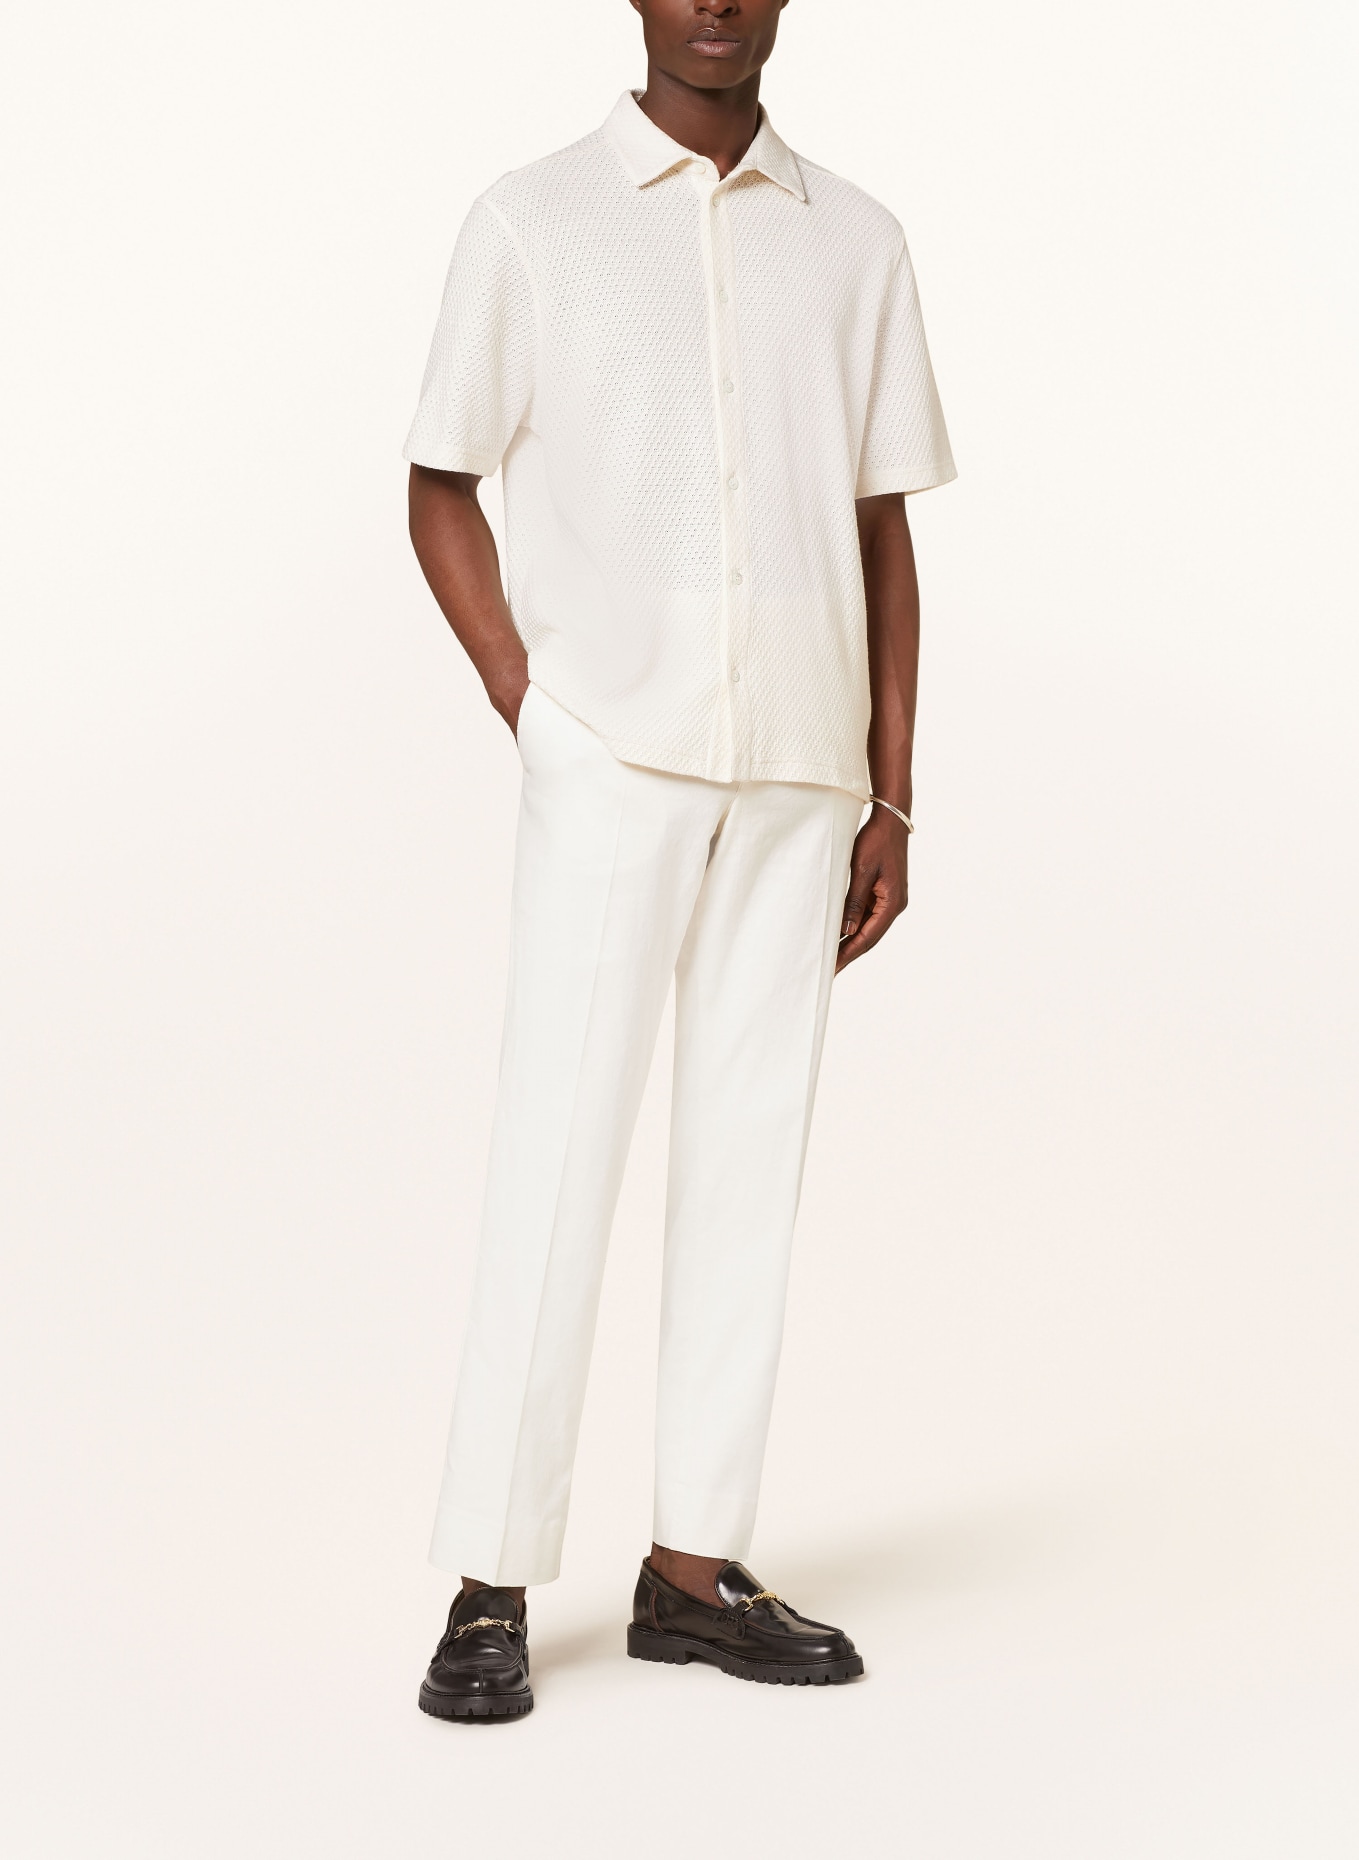 J.LINDEBERG Knit shirt regular fit, Color: WHITE (Image 2)